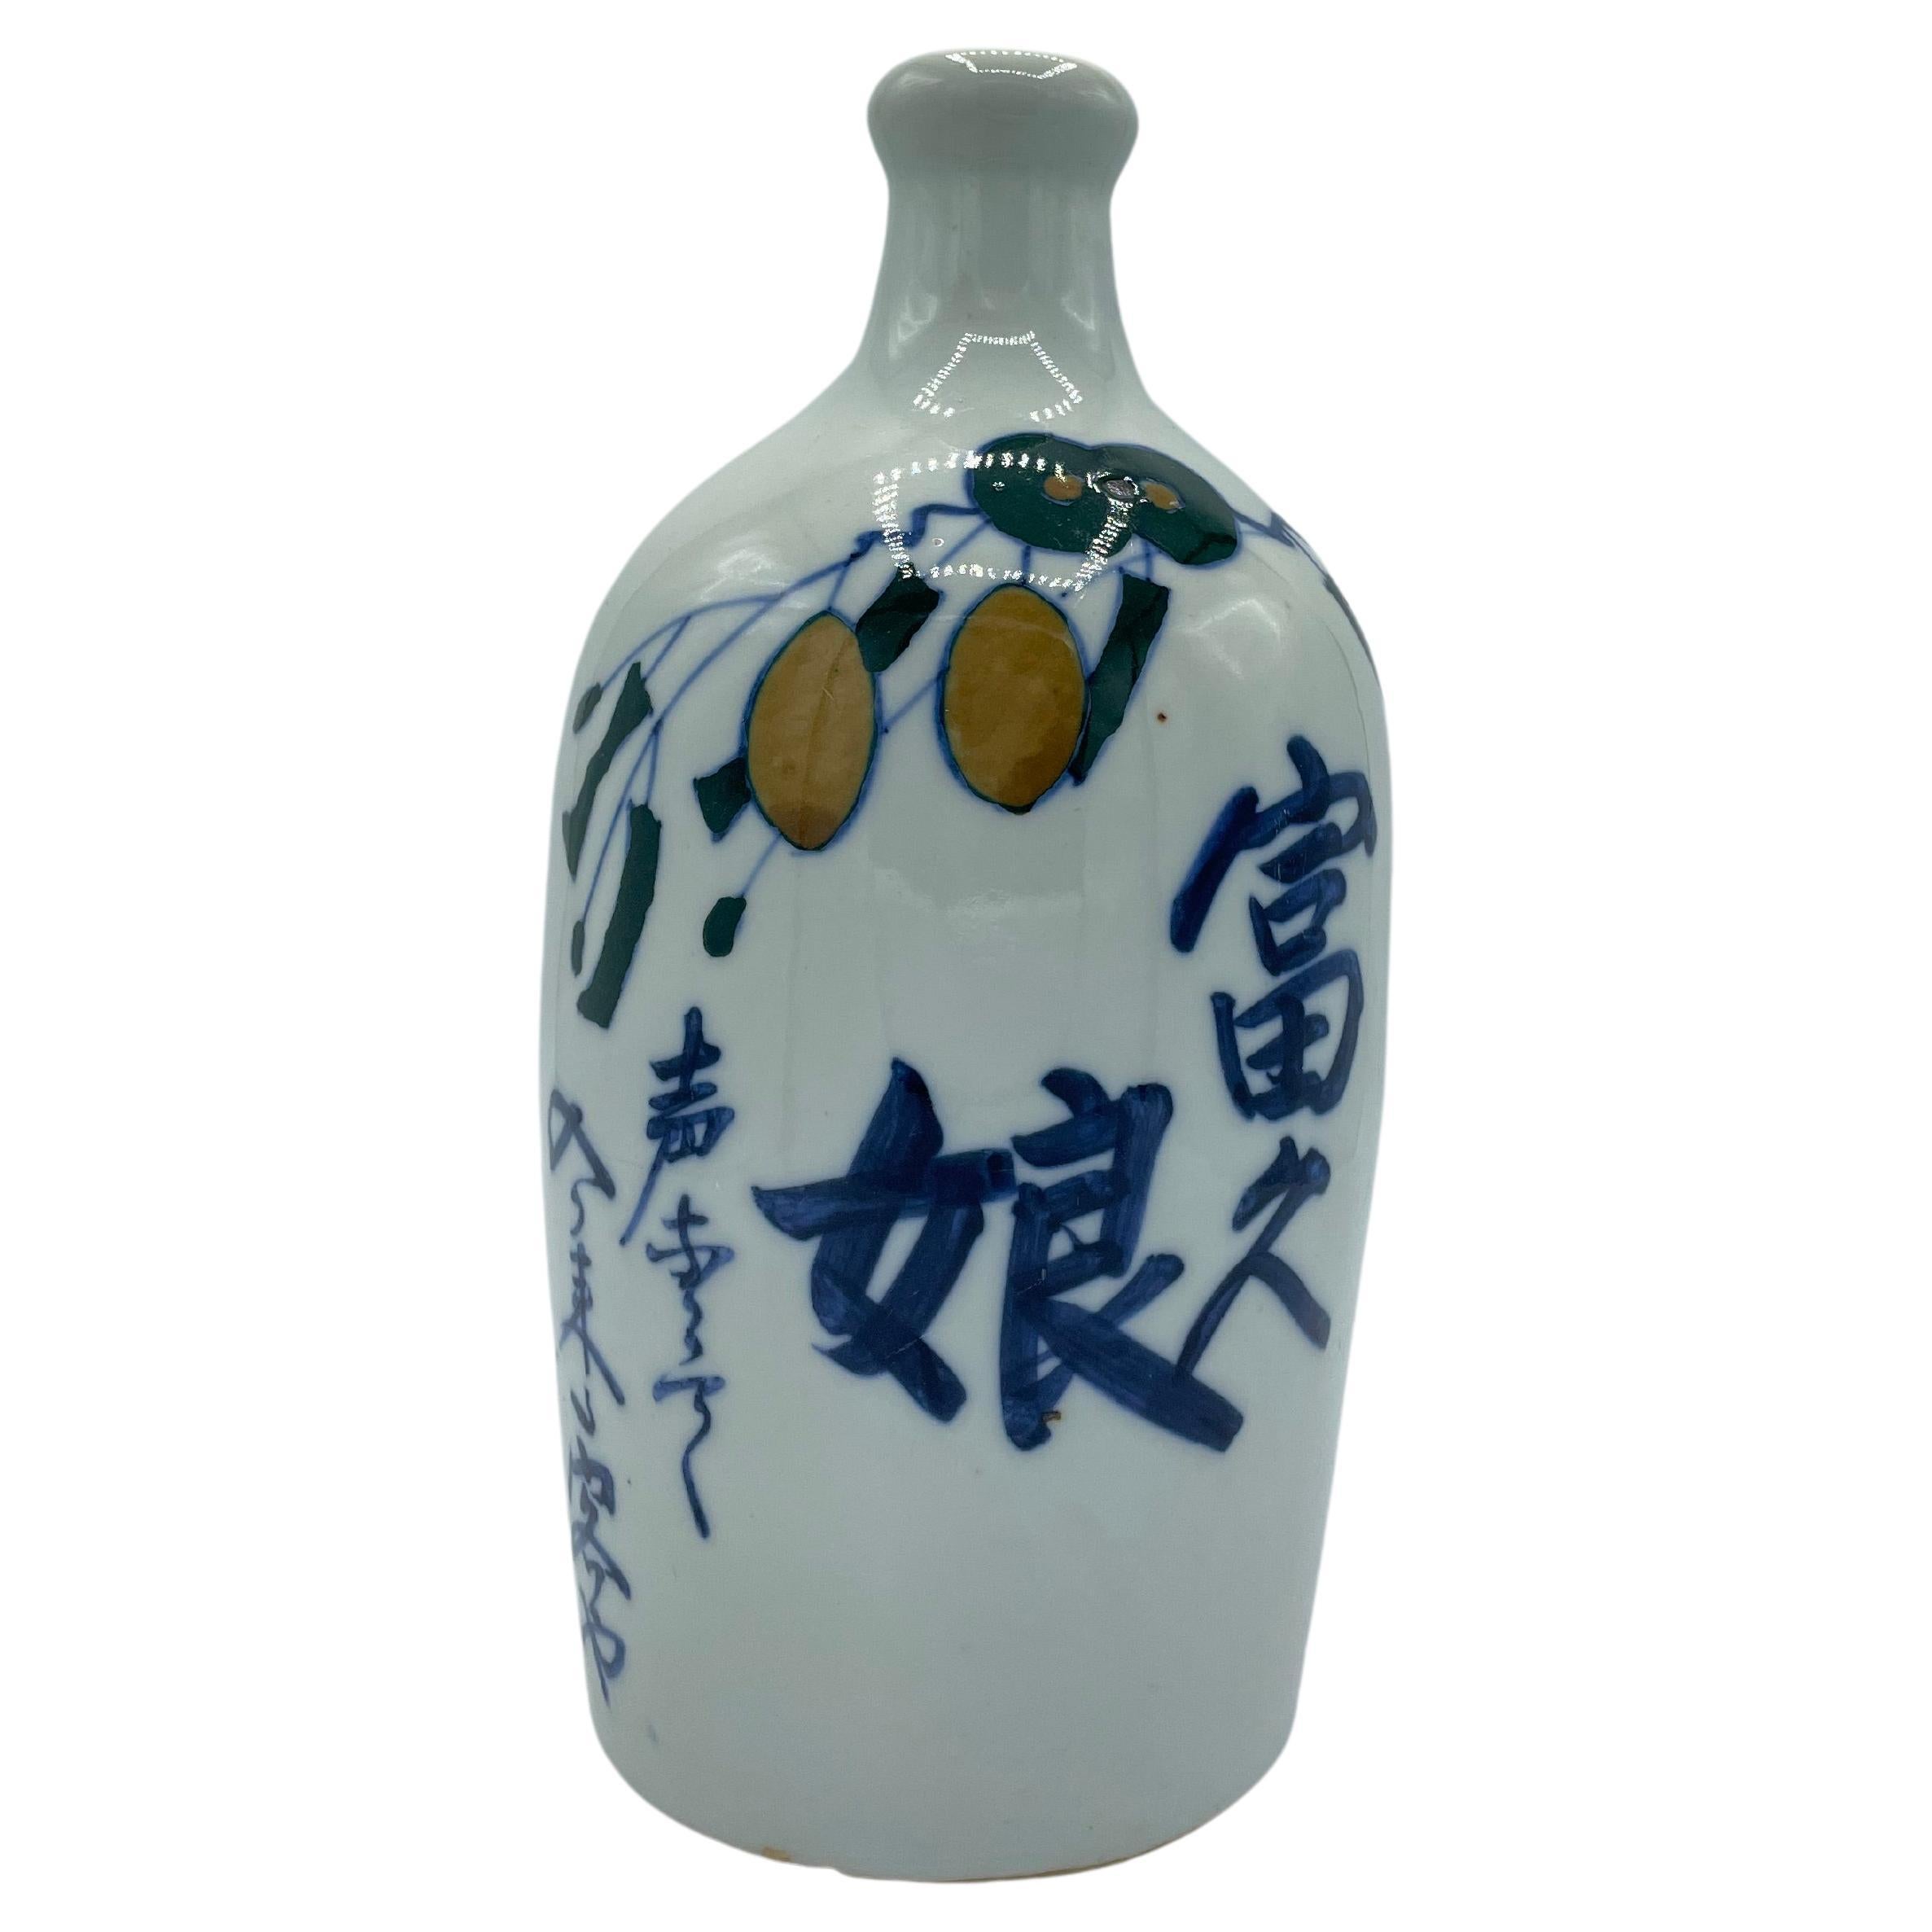 Japanese Antique Sake Bottle 'Fukumusume' 1960s Showa era  For Sale